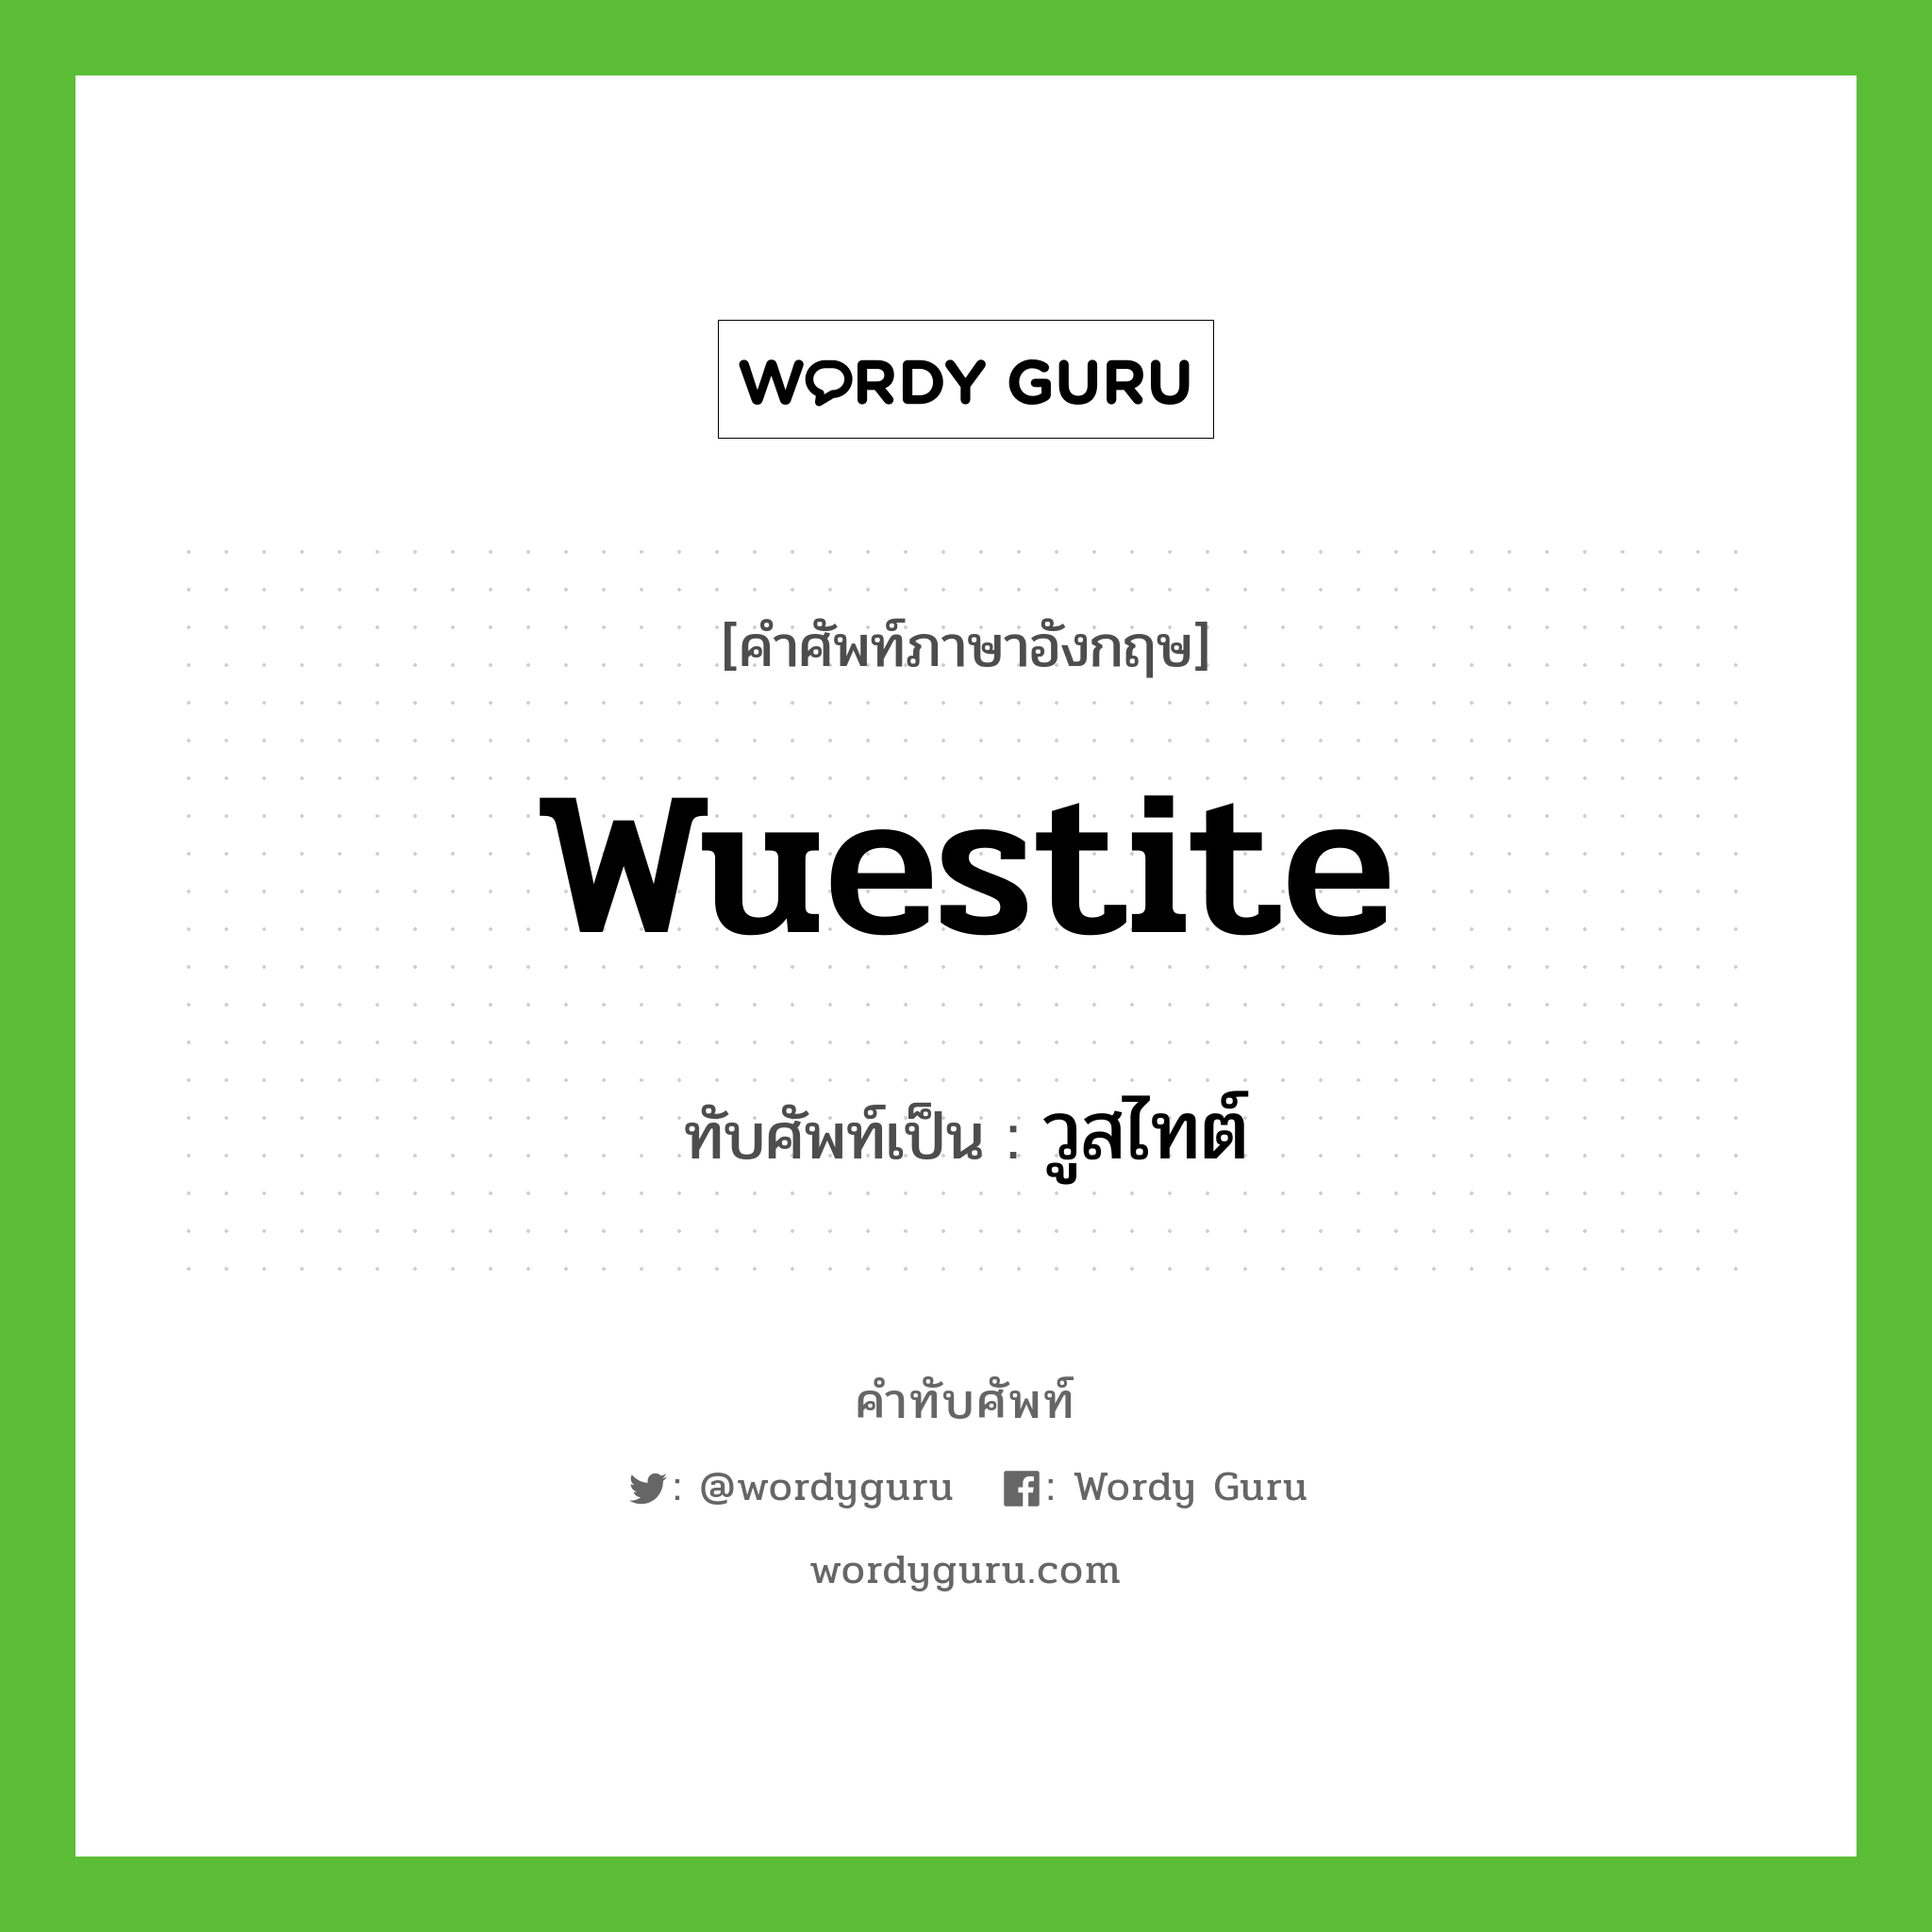 wuestite เขียนเป็นคำไทยว่าอะไร?, คำศัพท์ภาษาอังกฤษ wuestite ทับศัพท์เป็น วูสไทต์